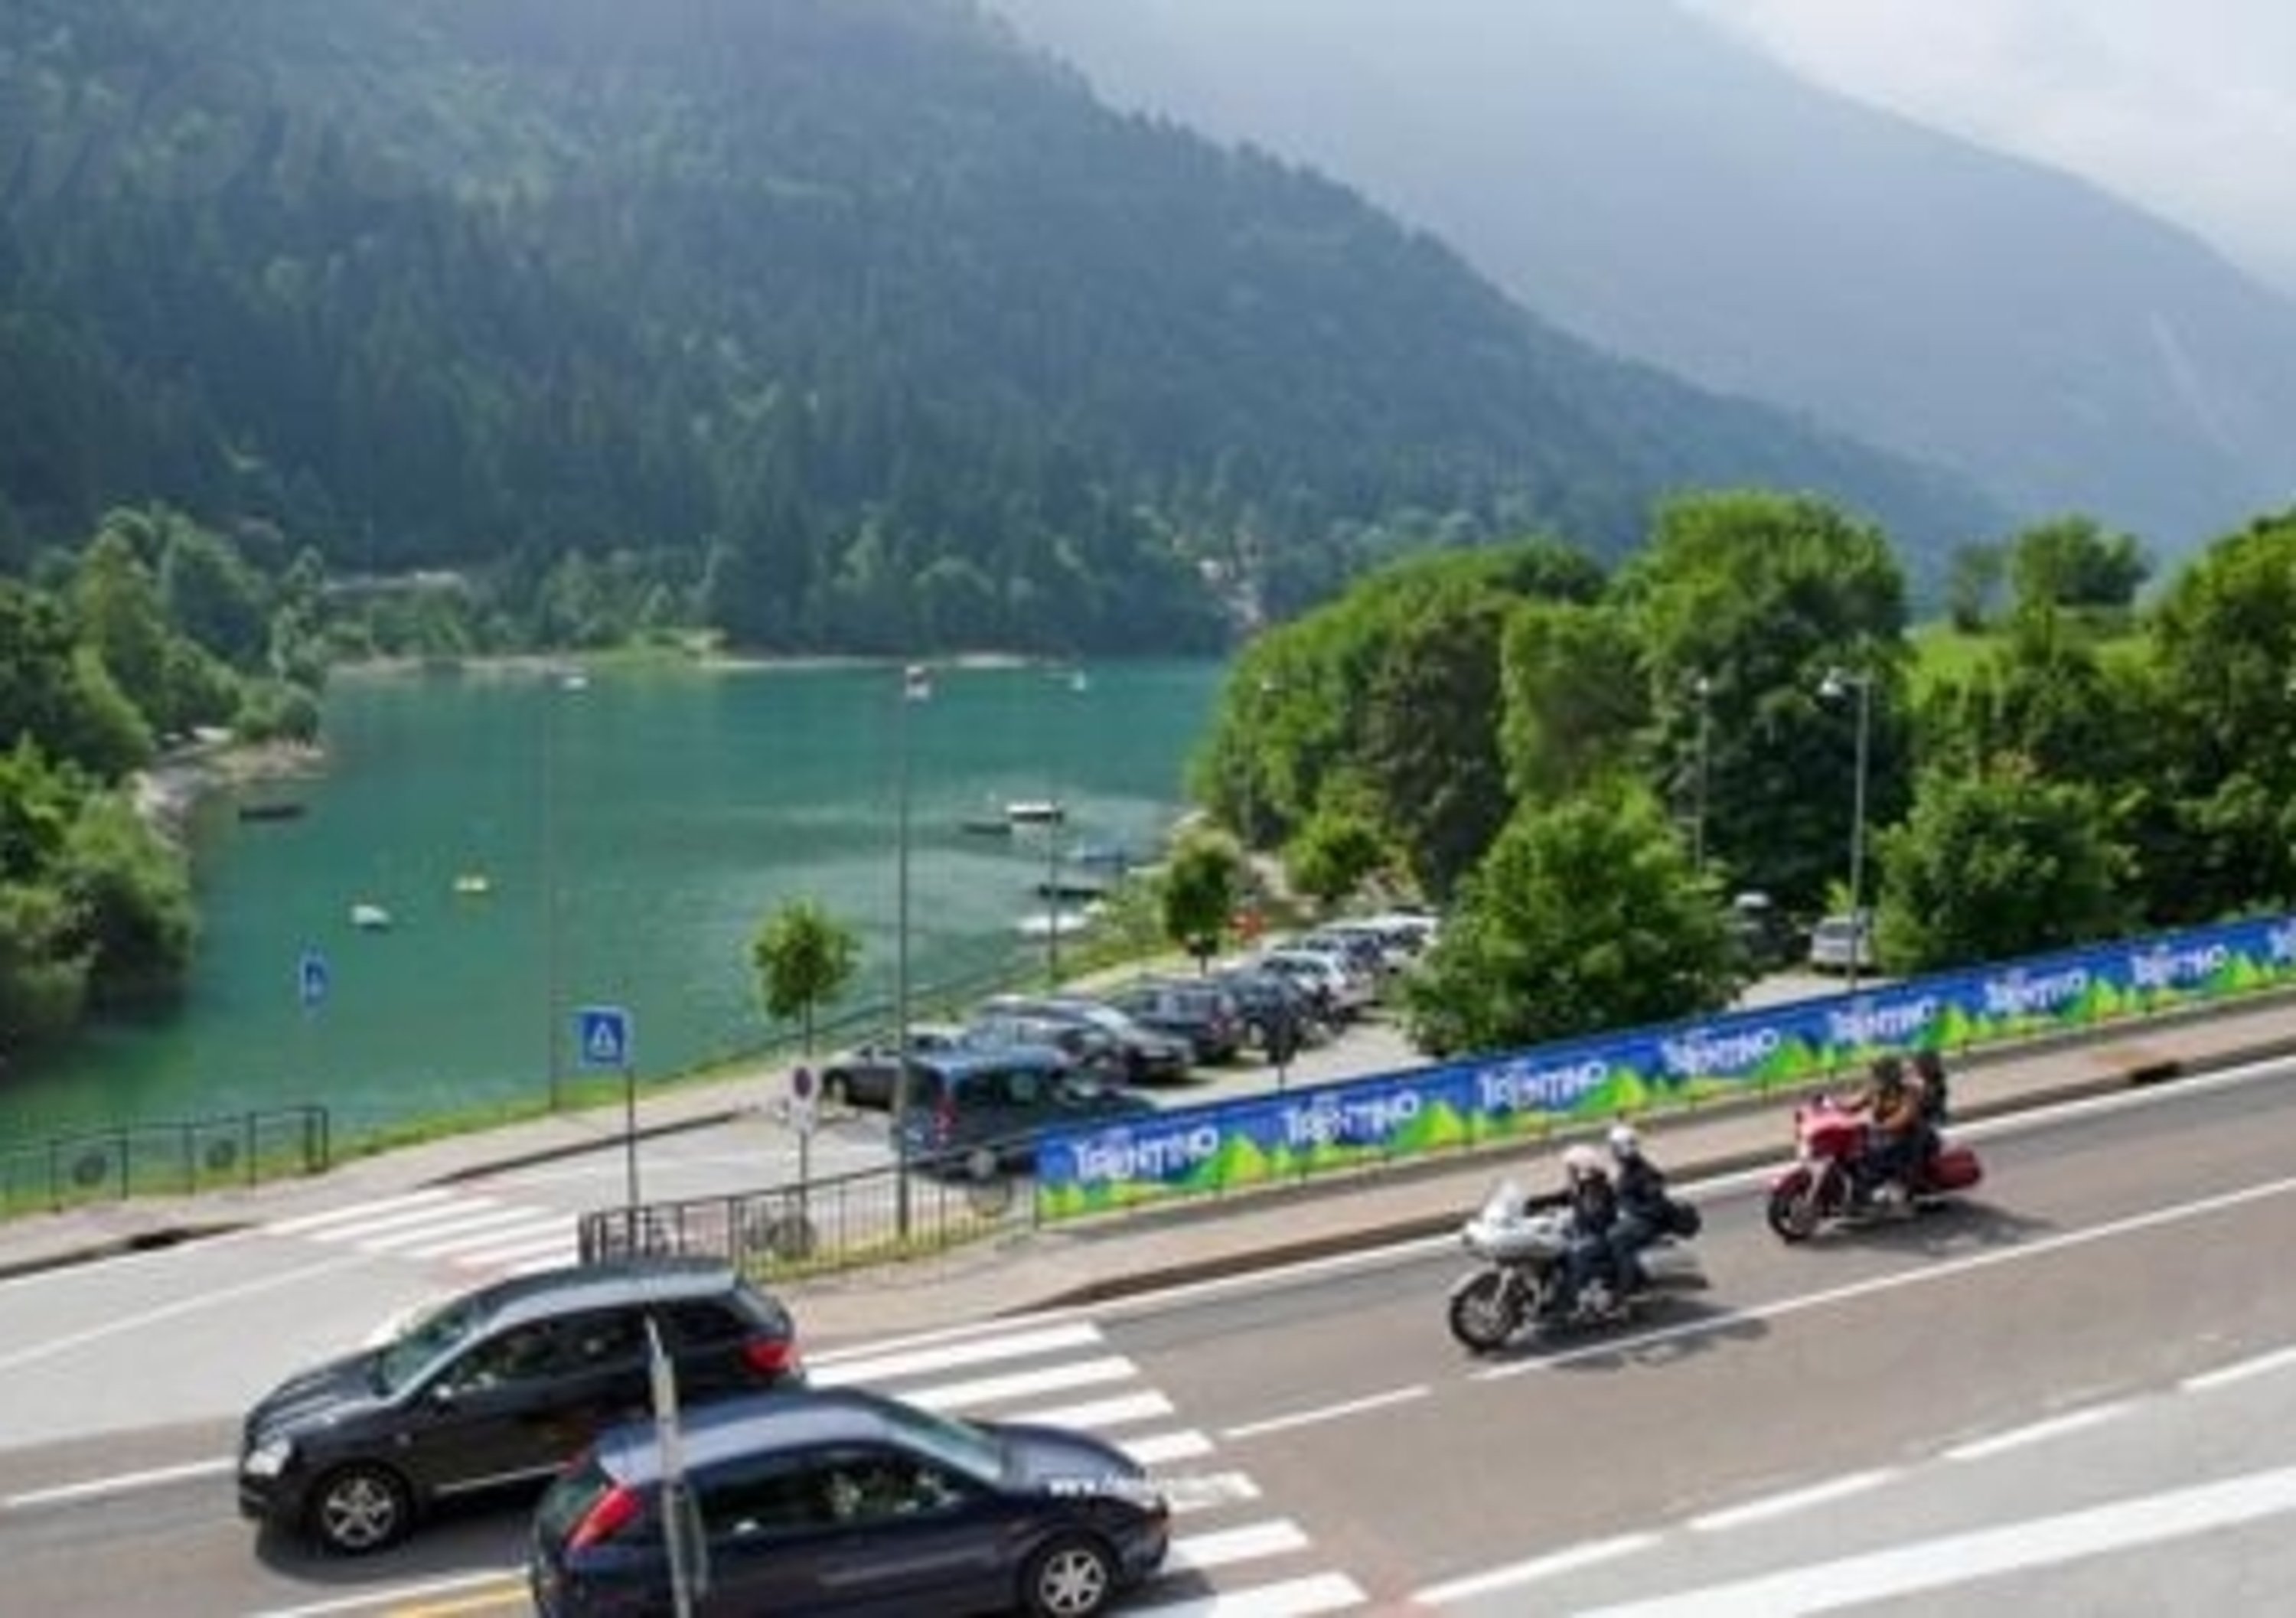 Chrono Alps 500: a luglio 2014 la seconda edizione